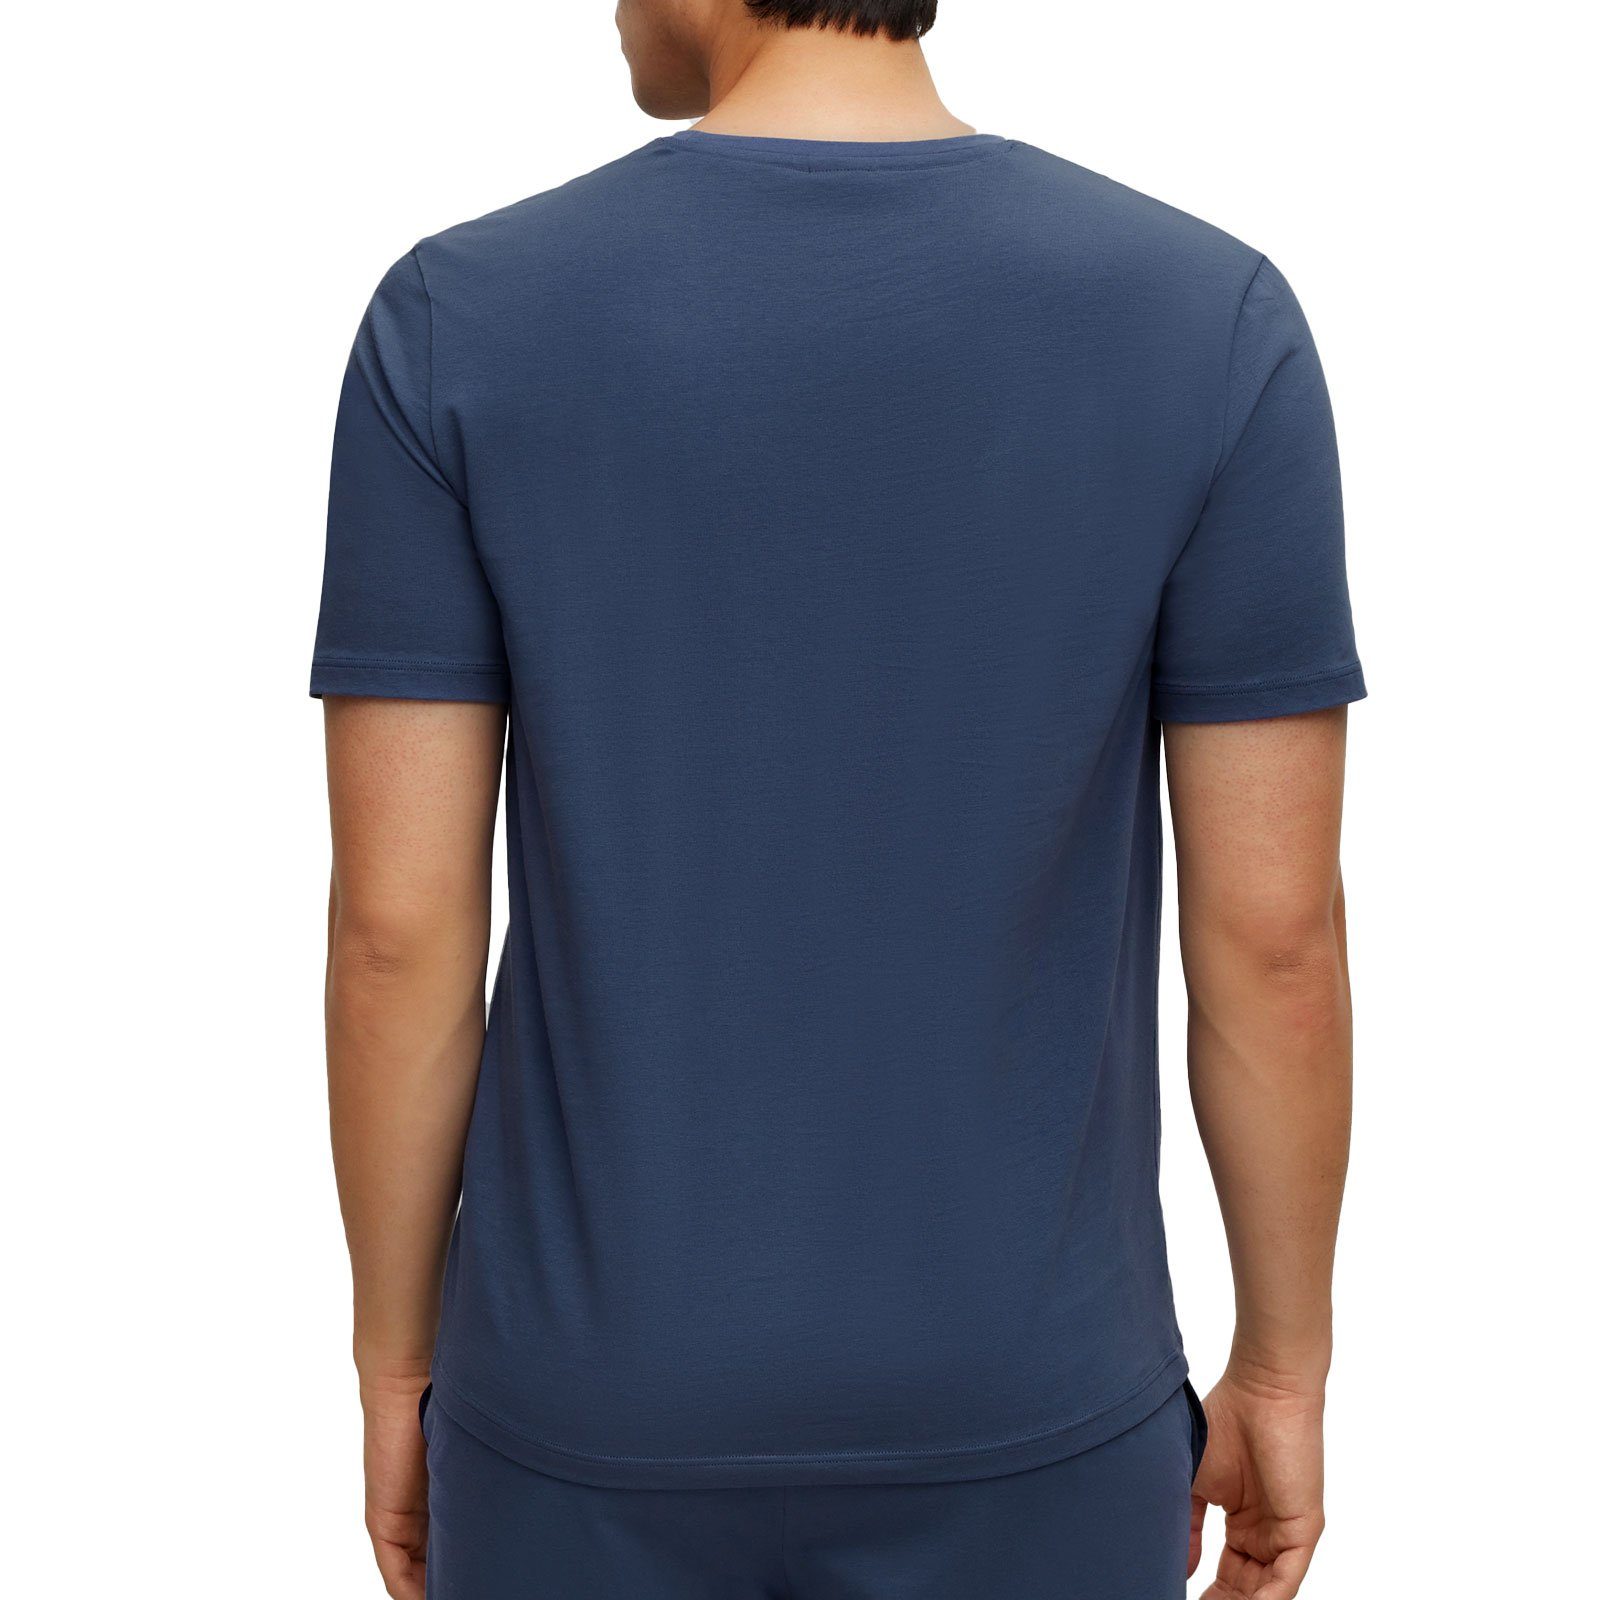 BOSS R der auf T-Shirt blue T-Shirt Brust gesticktem 475 mit Logo Mix&Match open